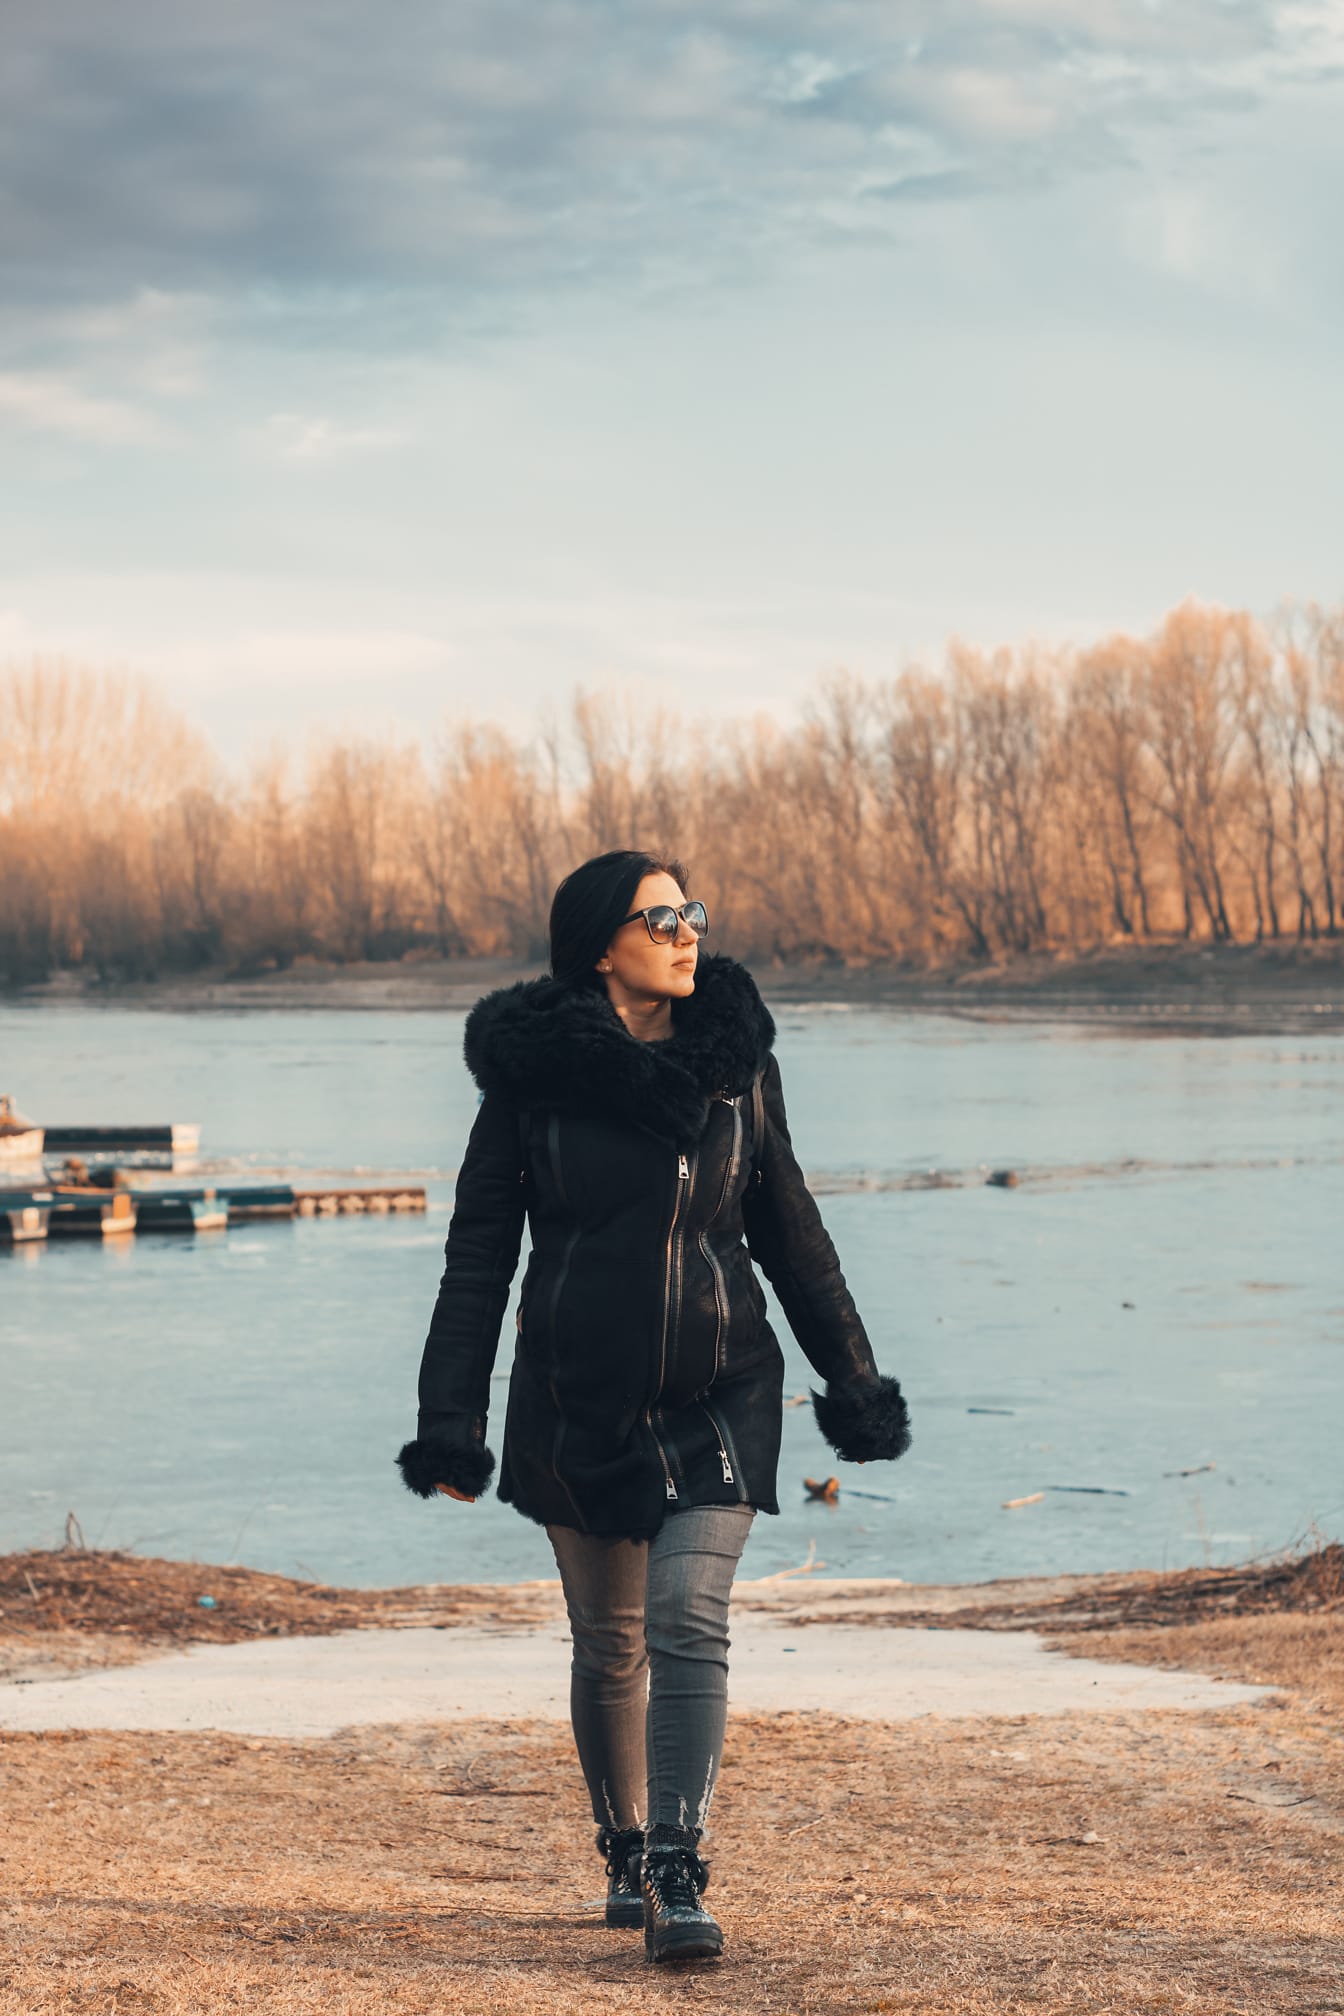 Mladá žena v zimním kabátě a slunečních brýlích se prochází po břehu zamrzlého jezera